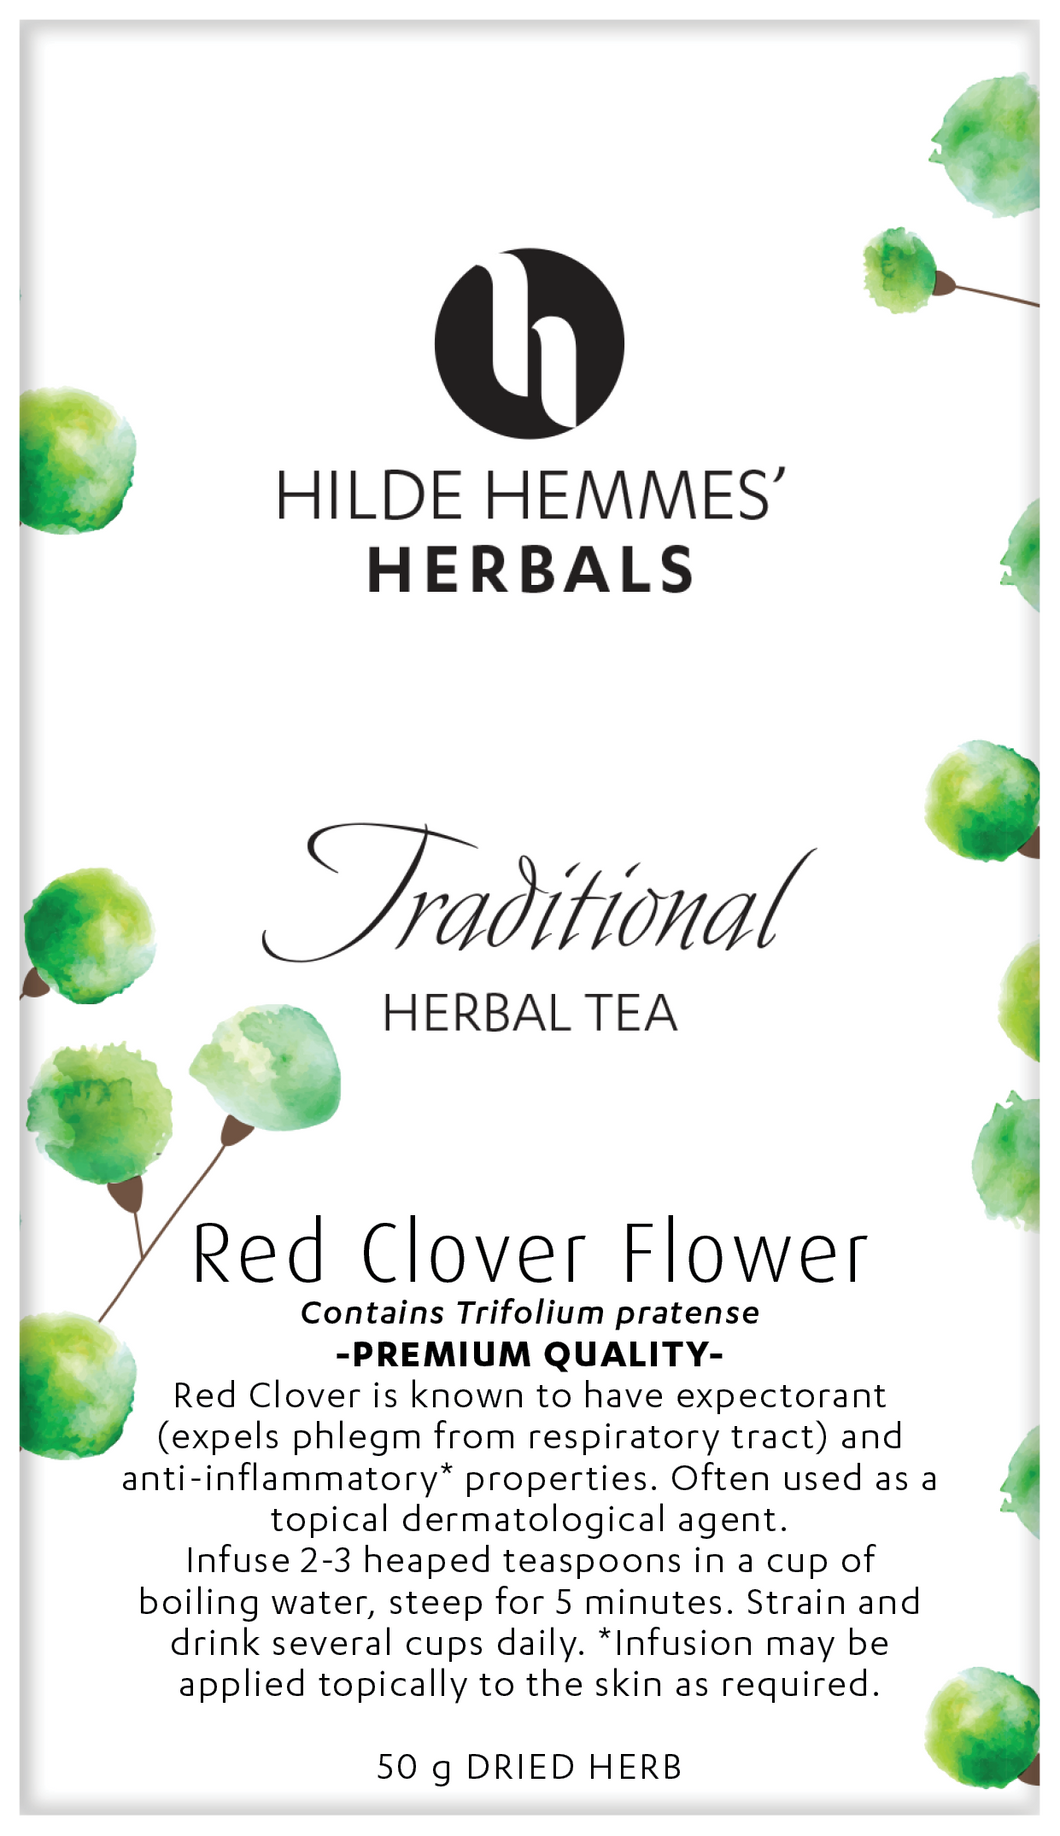 Hilde Hemmes Red Clover Flower 50g